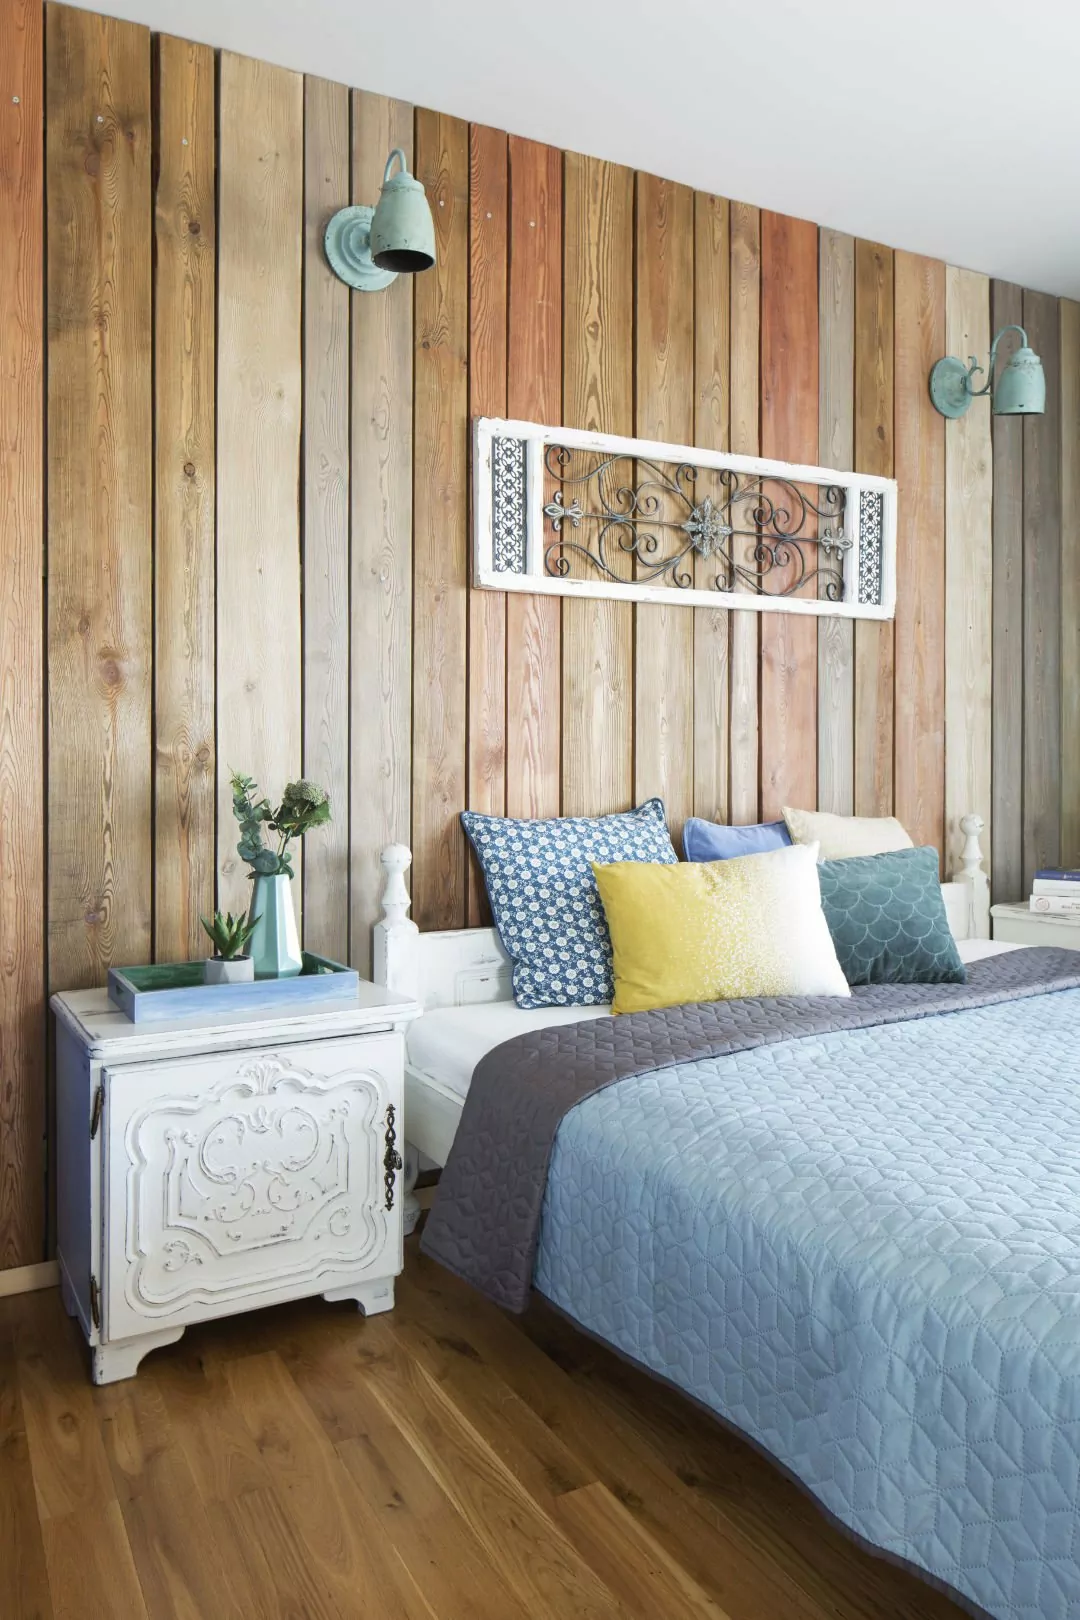 mieszkanie boho,dekoracja nad łóżkiem panel drewniany,ściana obita drewnianymi dechami w kolorze drewna, niebieskie kinkiety vintage, rzeźbione fronty szafek nocnych w kolorze białym